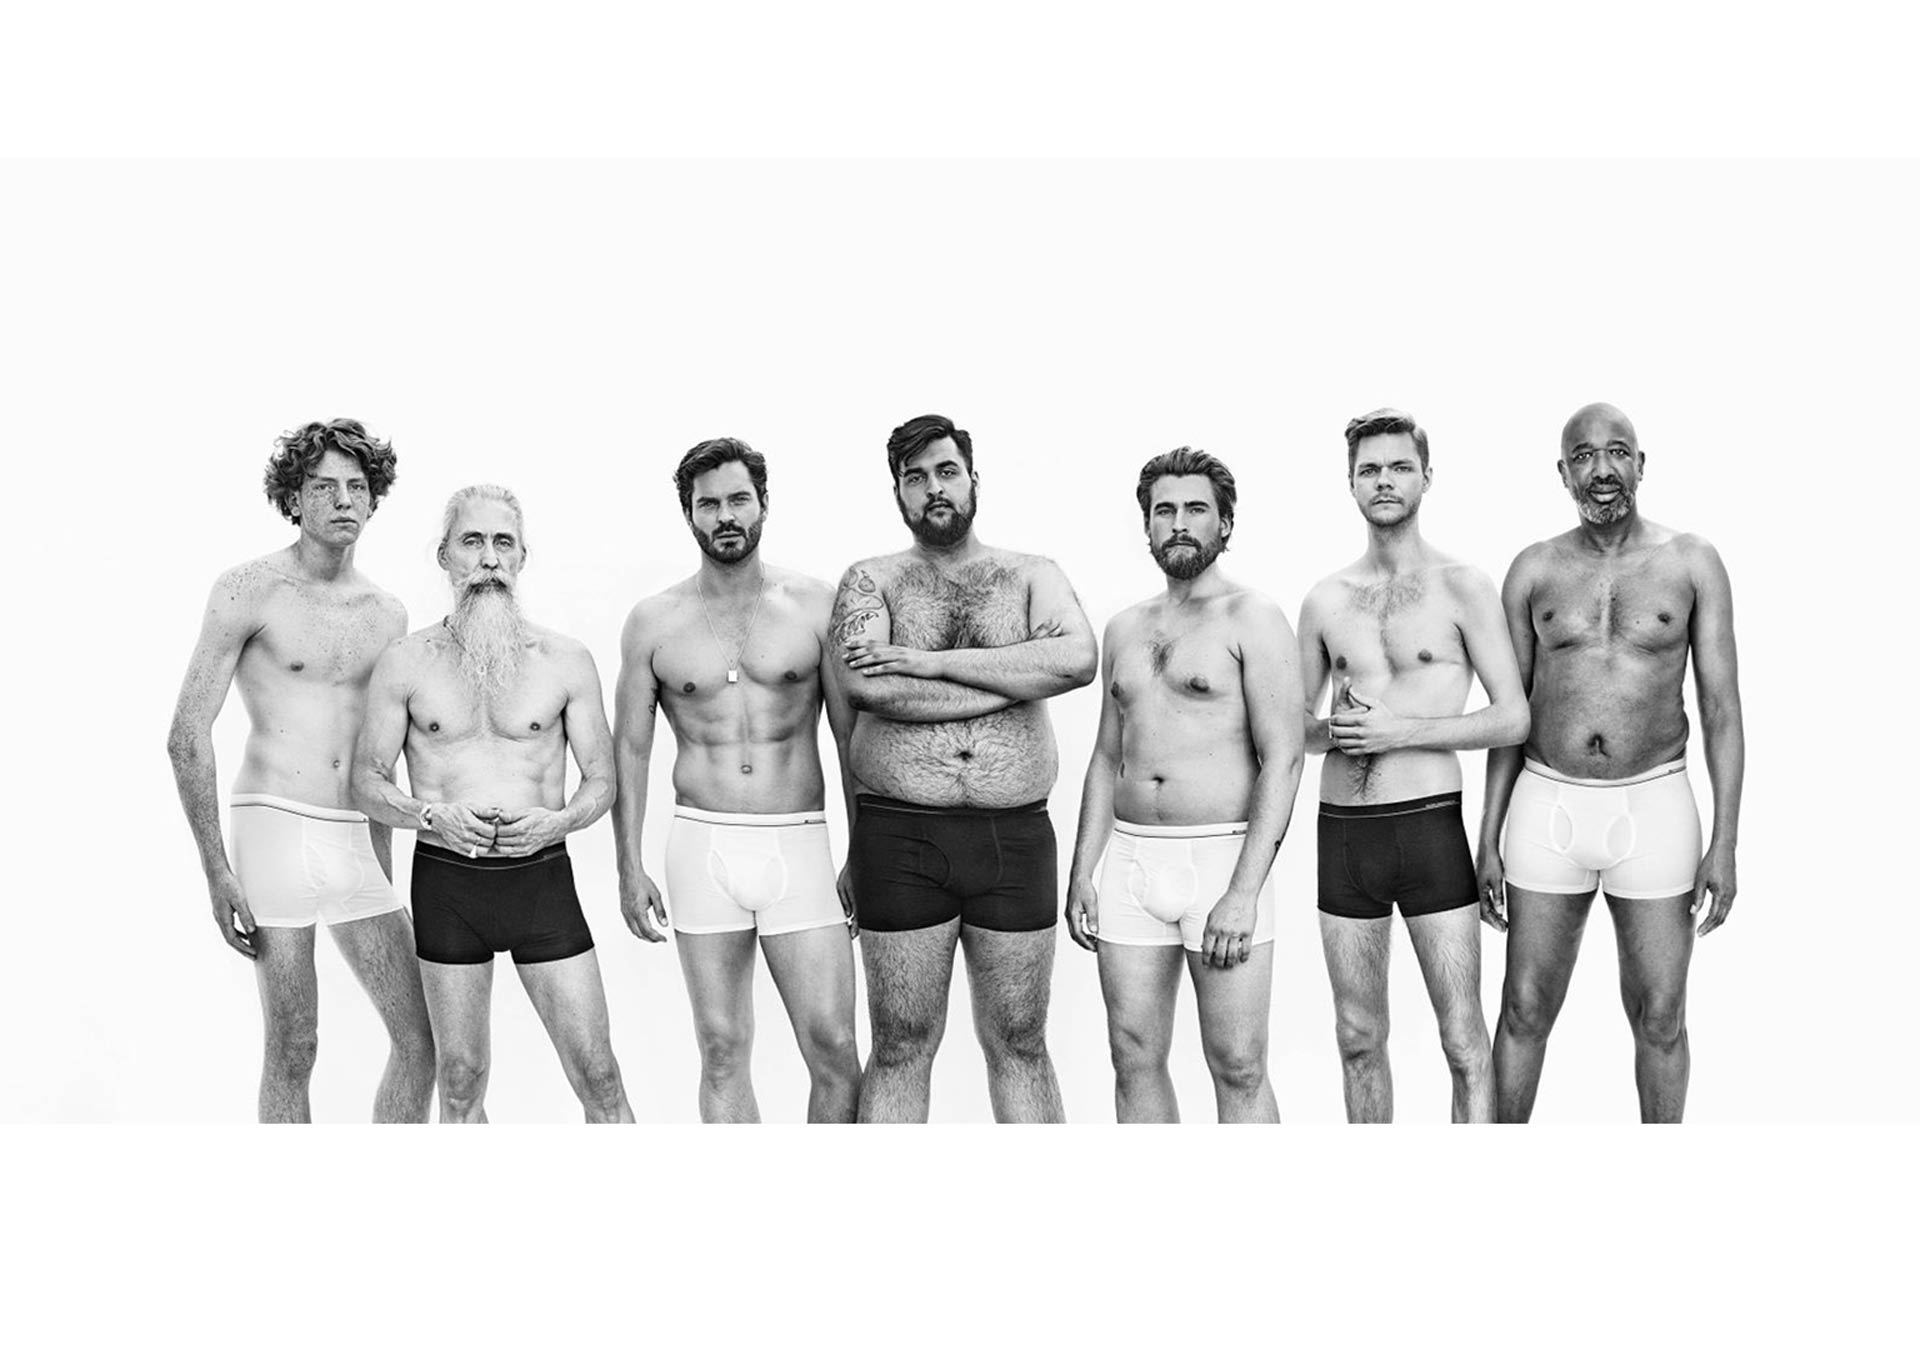 Una cadena de tiendas noruega creó una campaña sobre ropa interior masculina diseñada para todo tipo de cuerpos